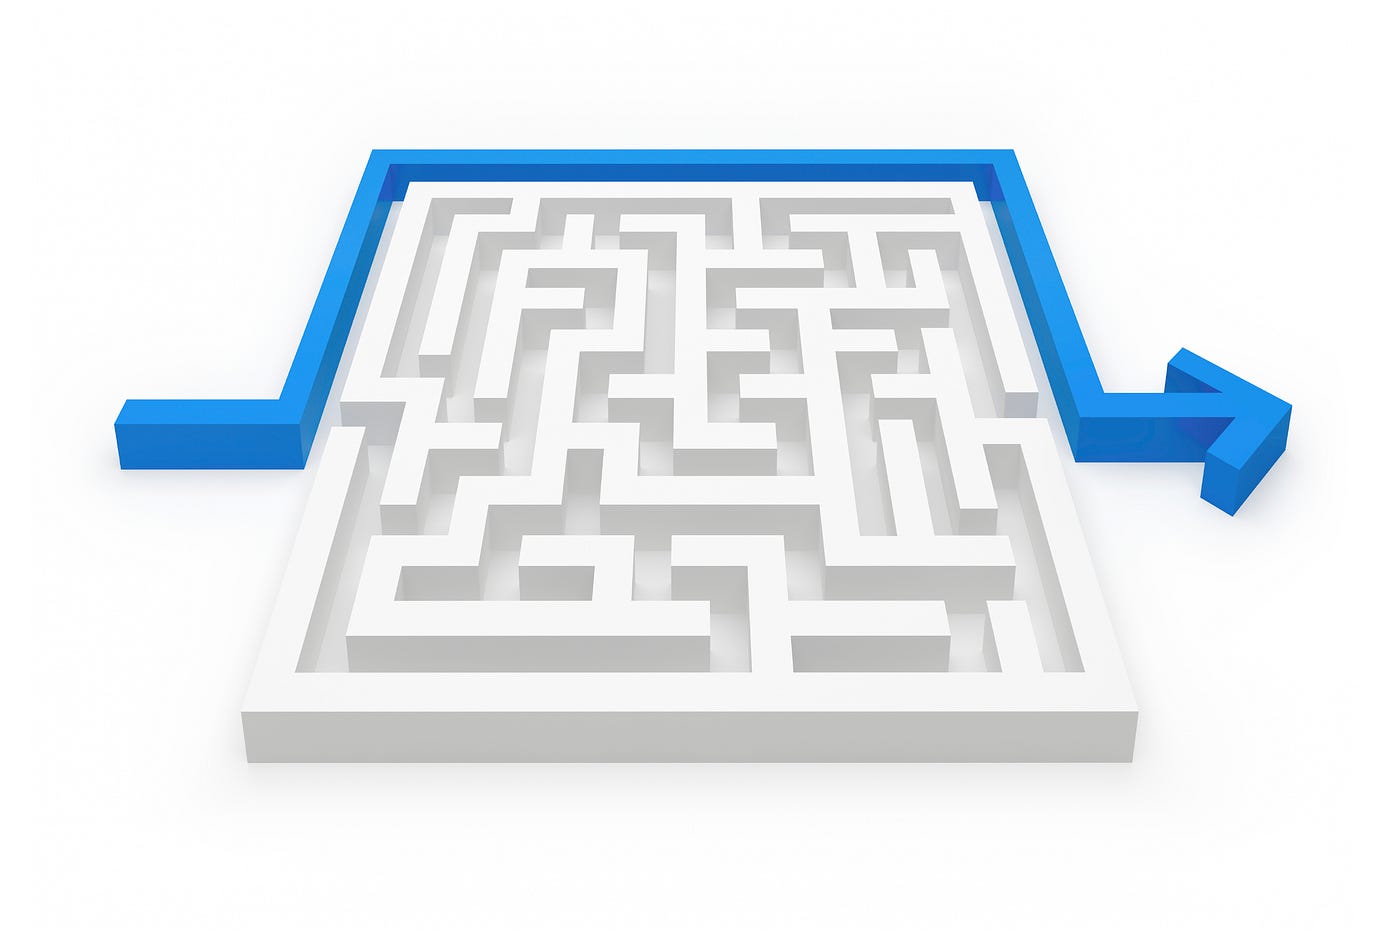 desenho de uma seta que resolveu um labirinto contornando-o, ao invés de atravessá-lo.